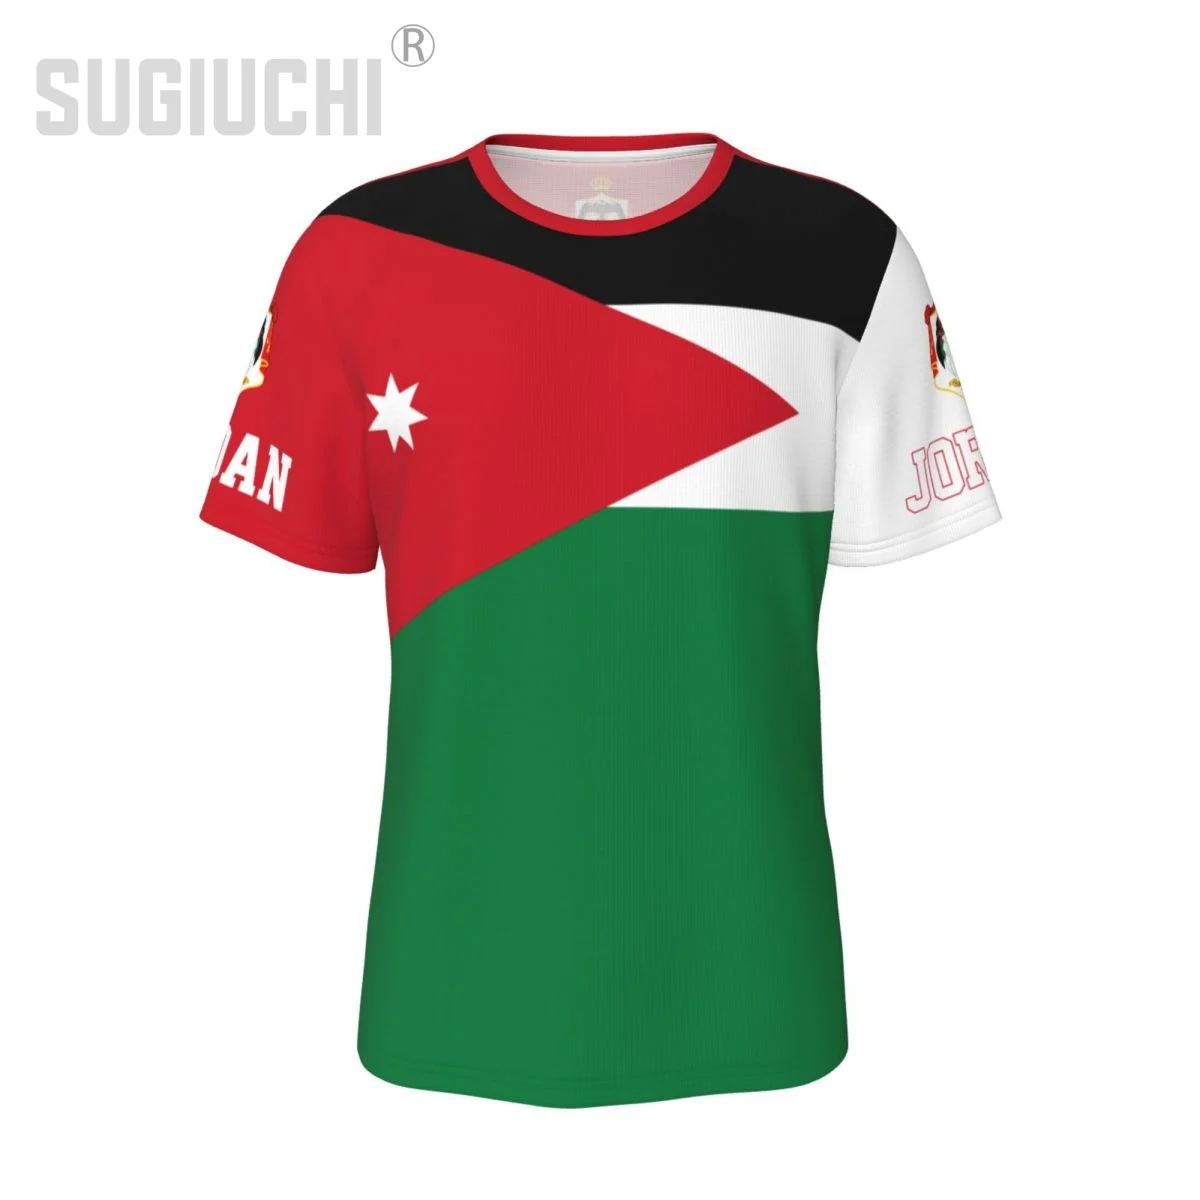 Унисекс тениска с националния флаг Йордания, Иорданские тениски, джърси За Мъже И Жени, Футболни фенове, Подаръци, дрехи по поръчка, тениска